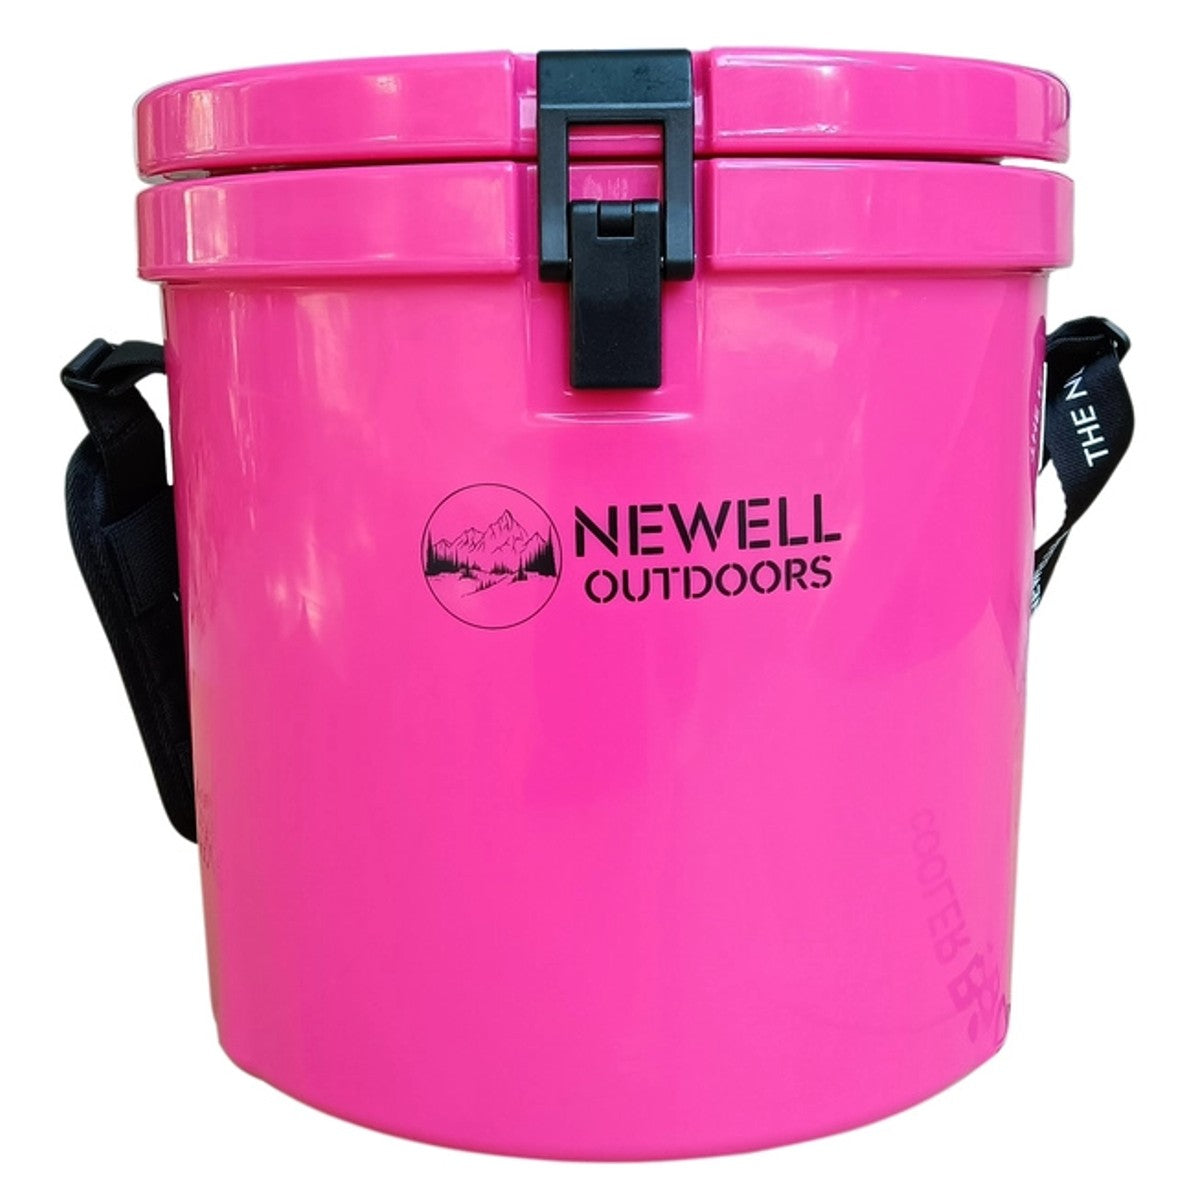 The Neweller Twelve Cooler - Hot Pink